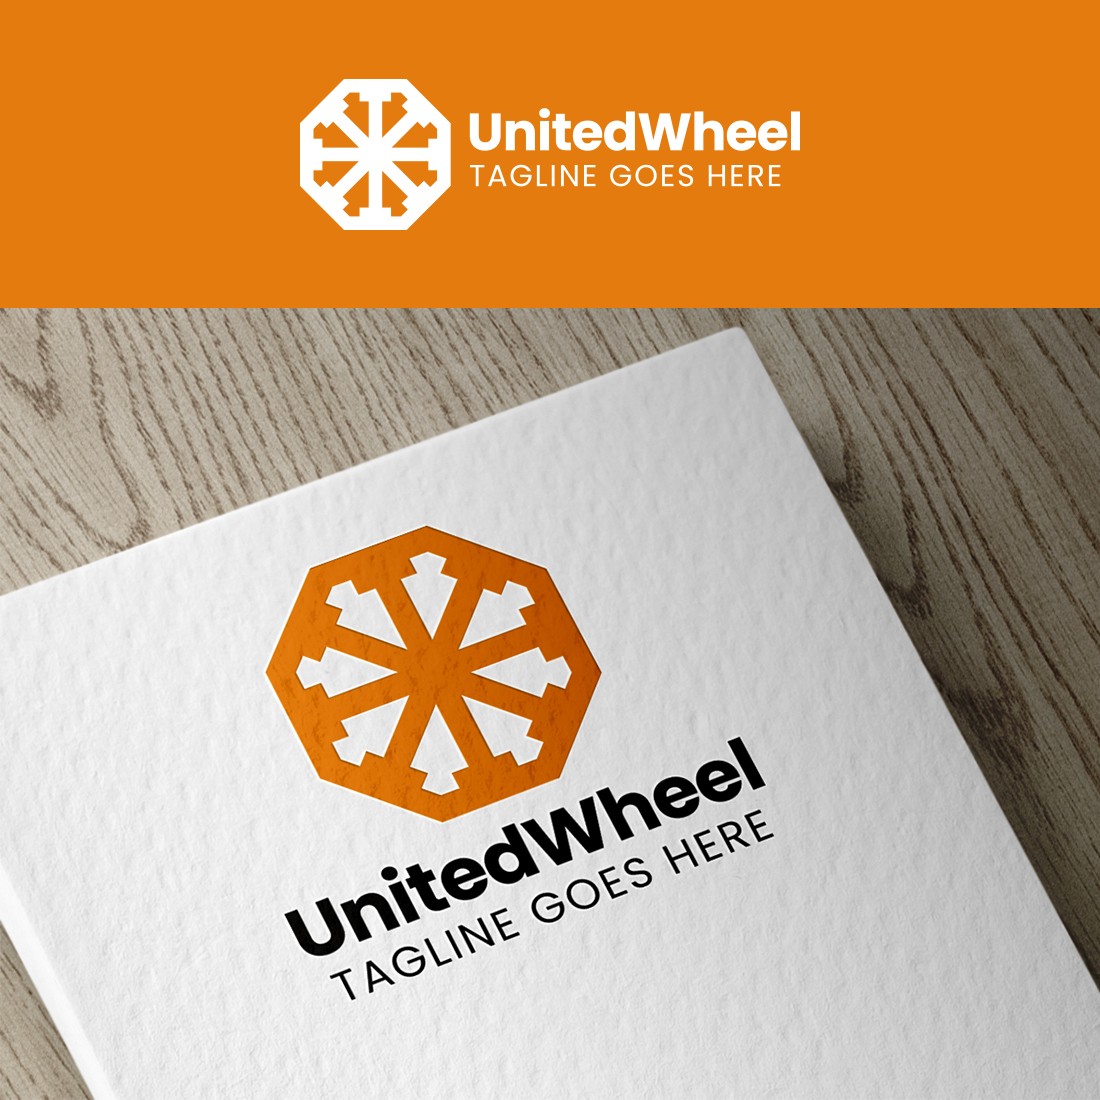 United Wheel - Community Logo - People Logo cover image.